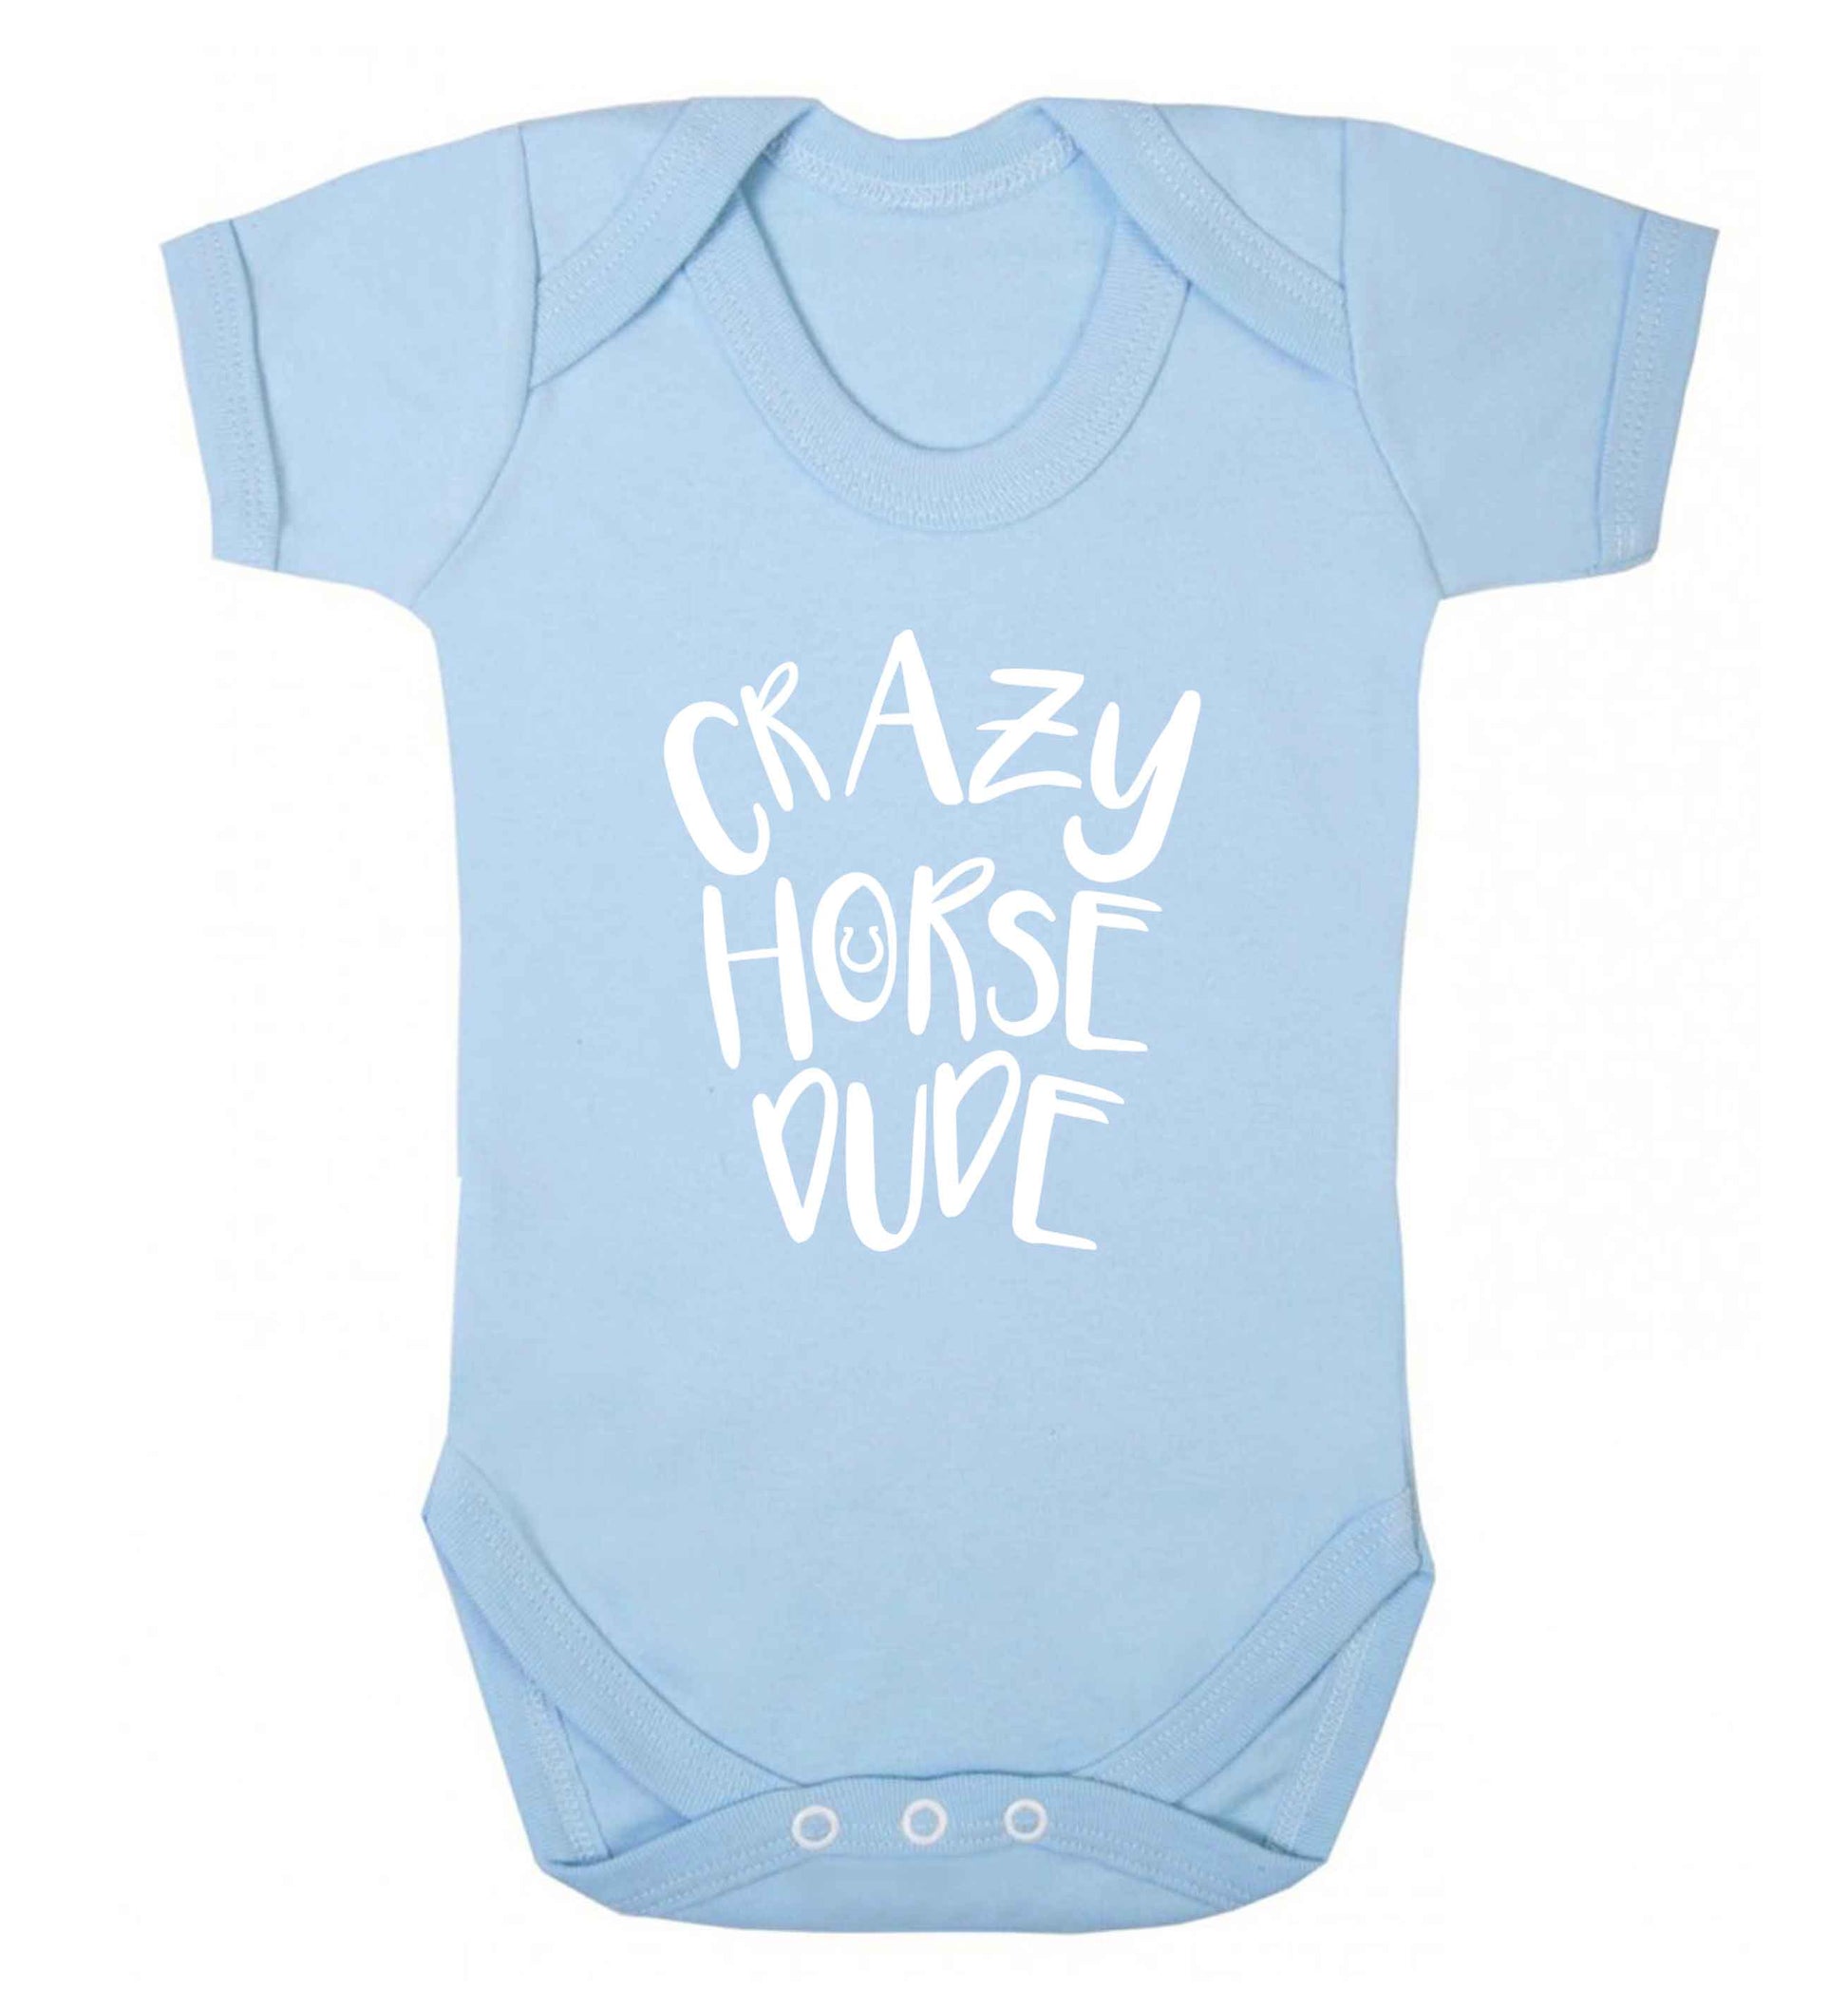 Crazy horse dude baby vest pale blue 18-24 months